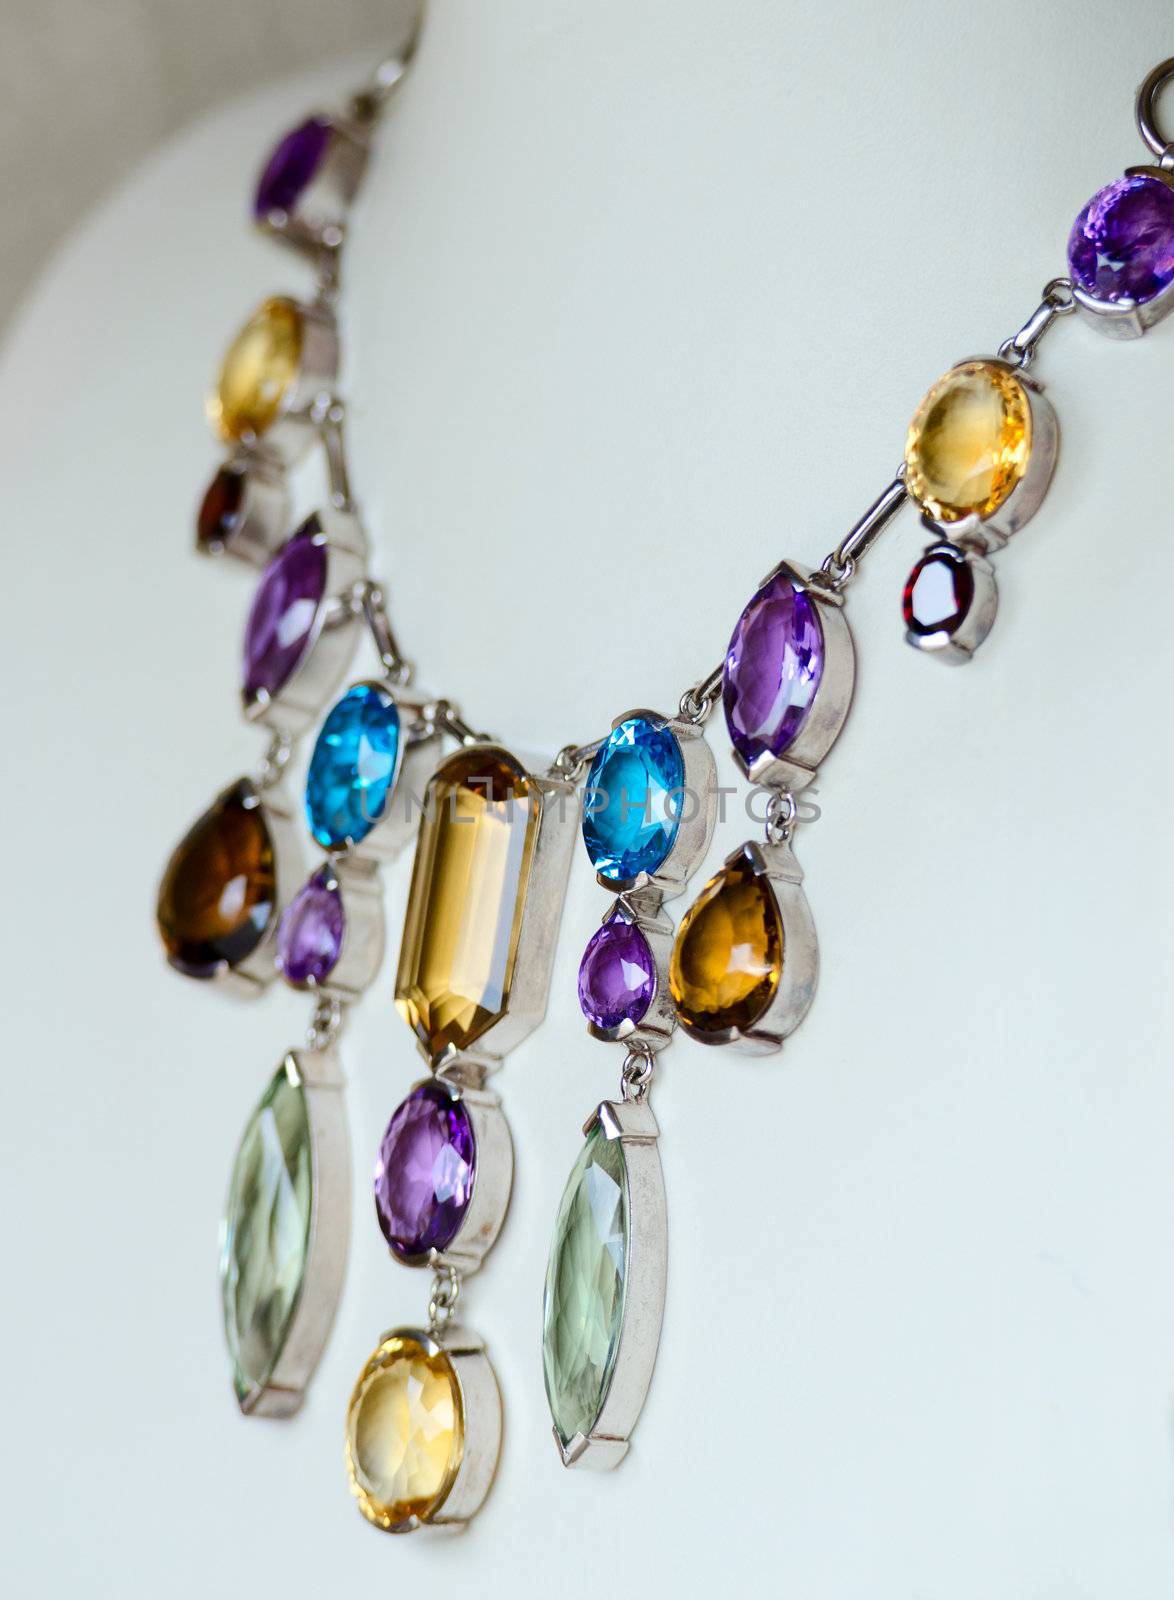 Necklace with colored precious jewel by iryna_rasko